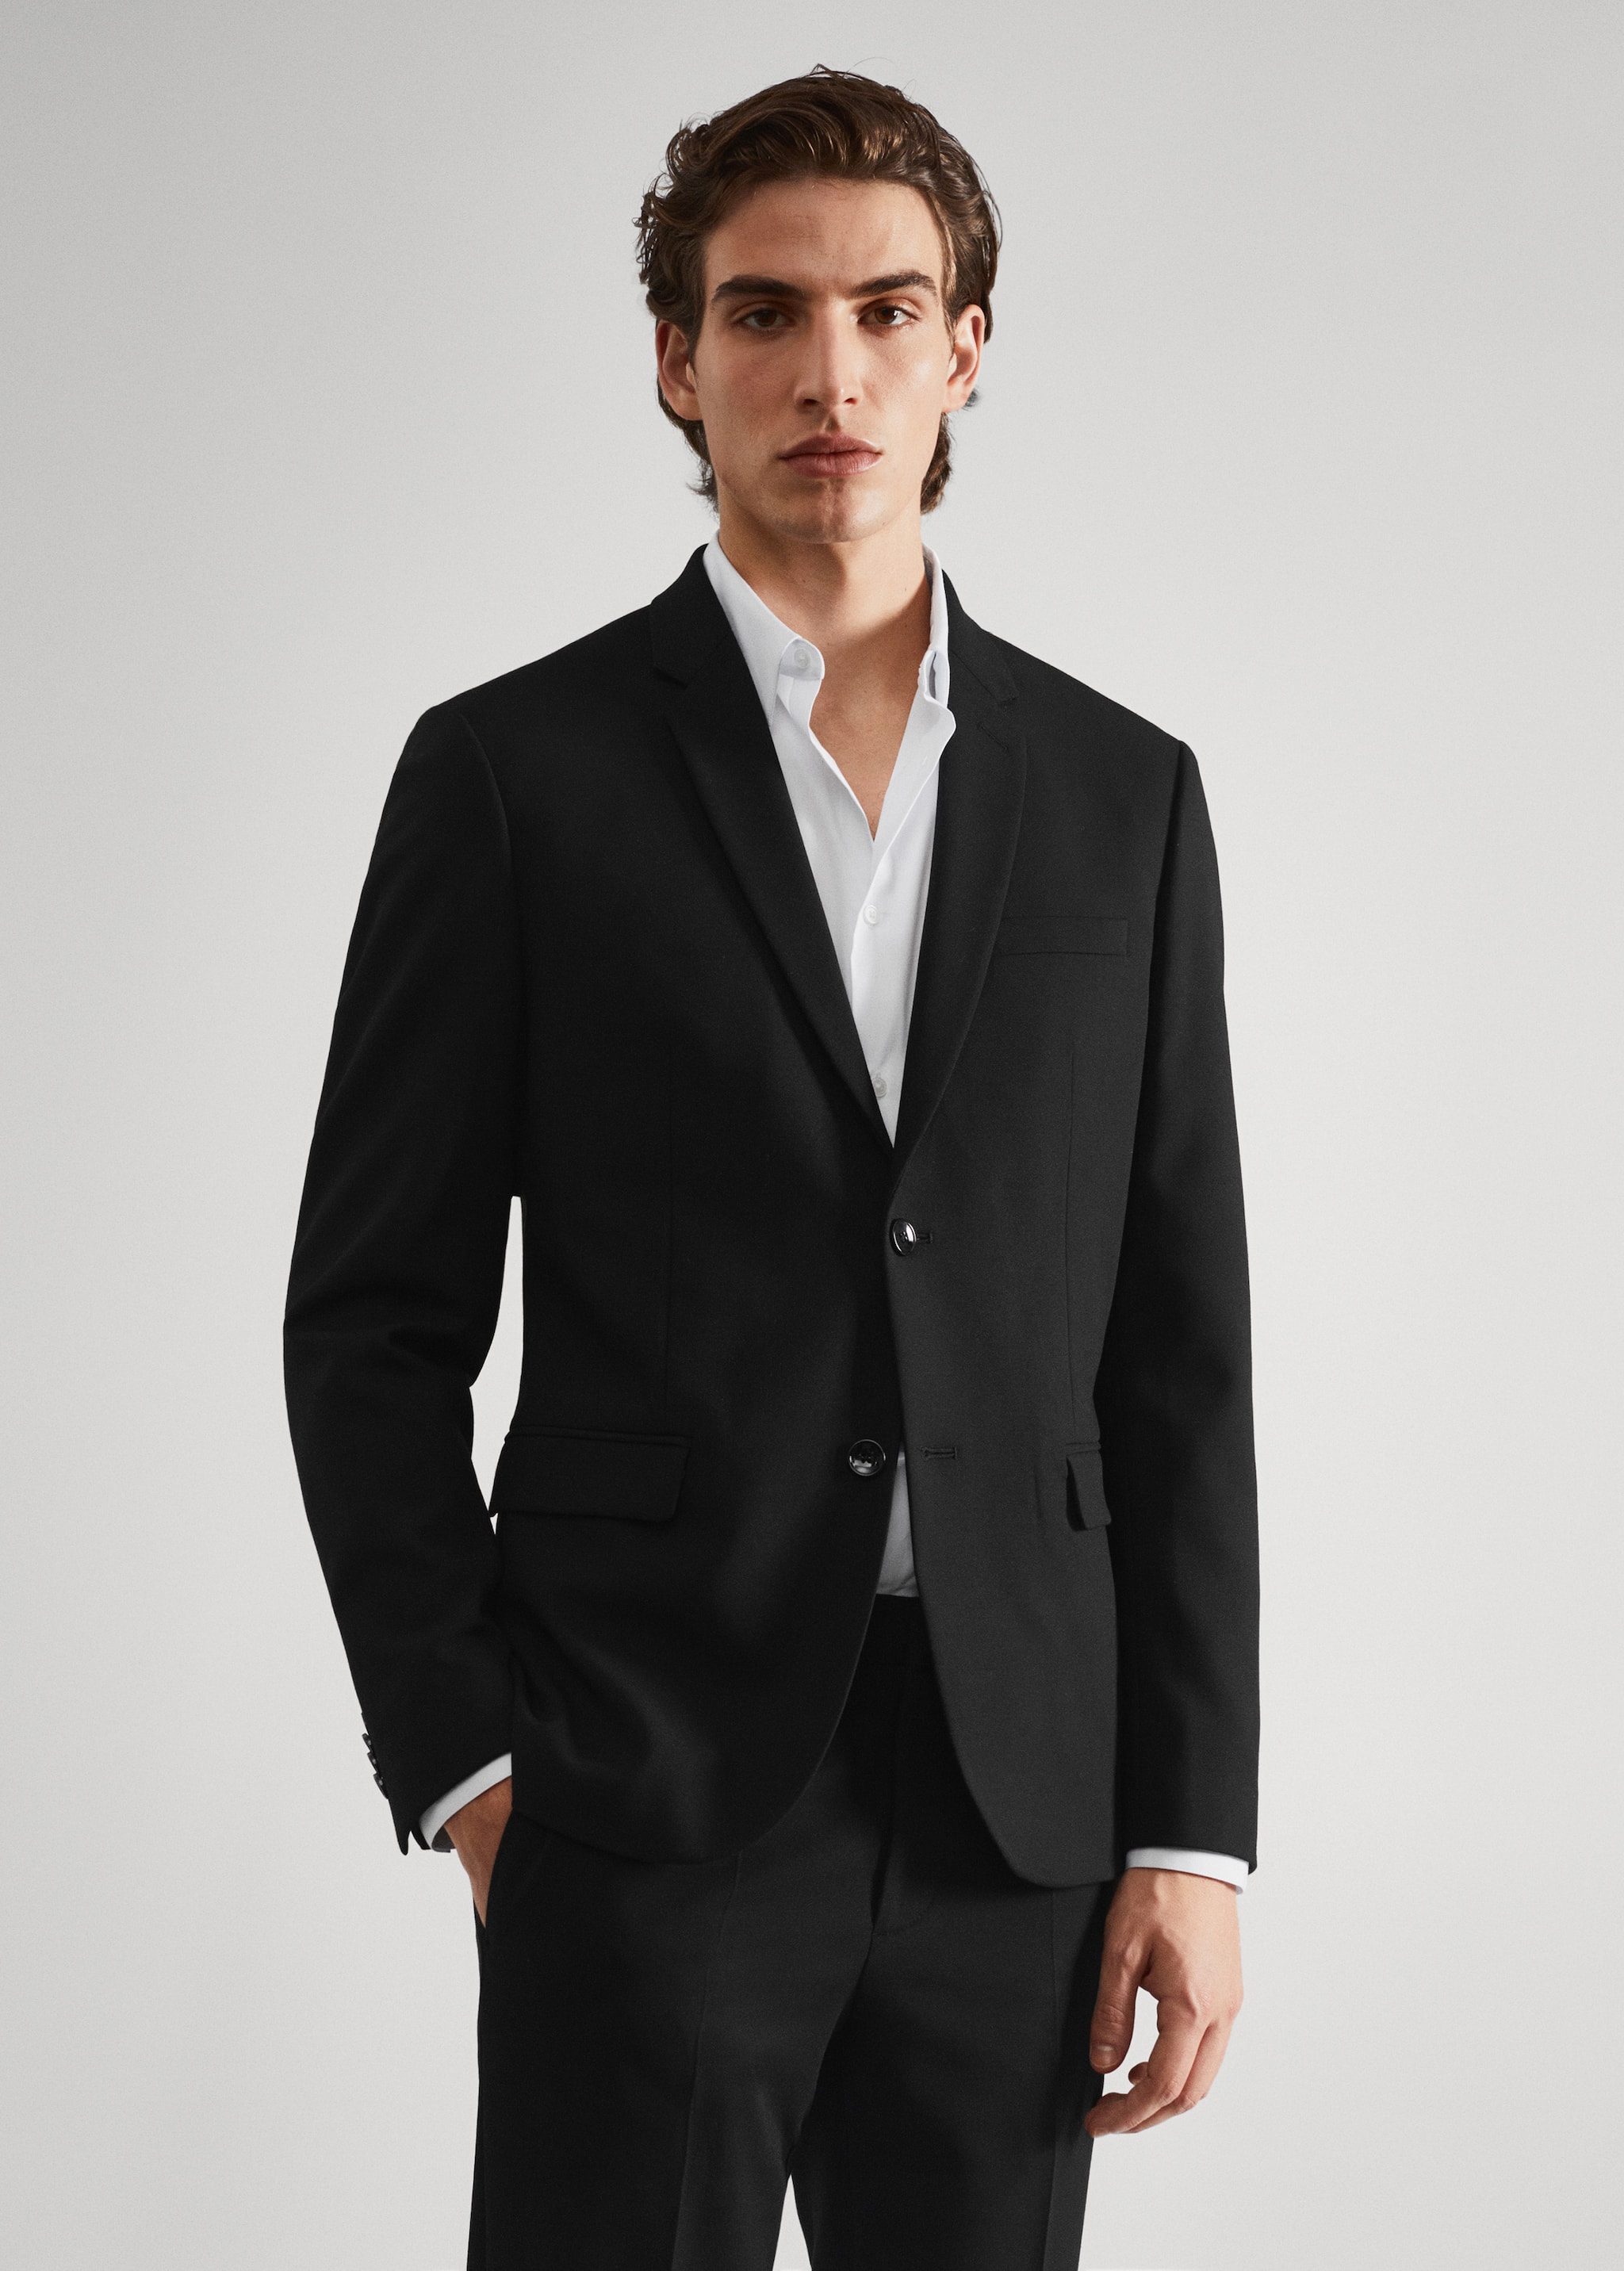 Super slim-fit suit jacket - Medium plane